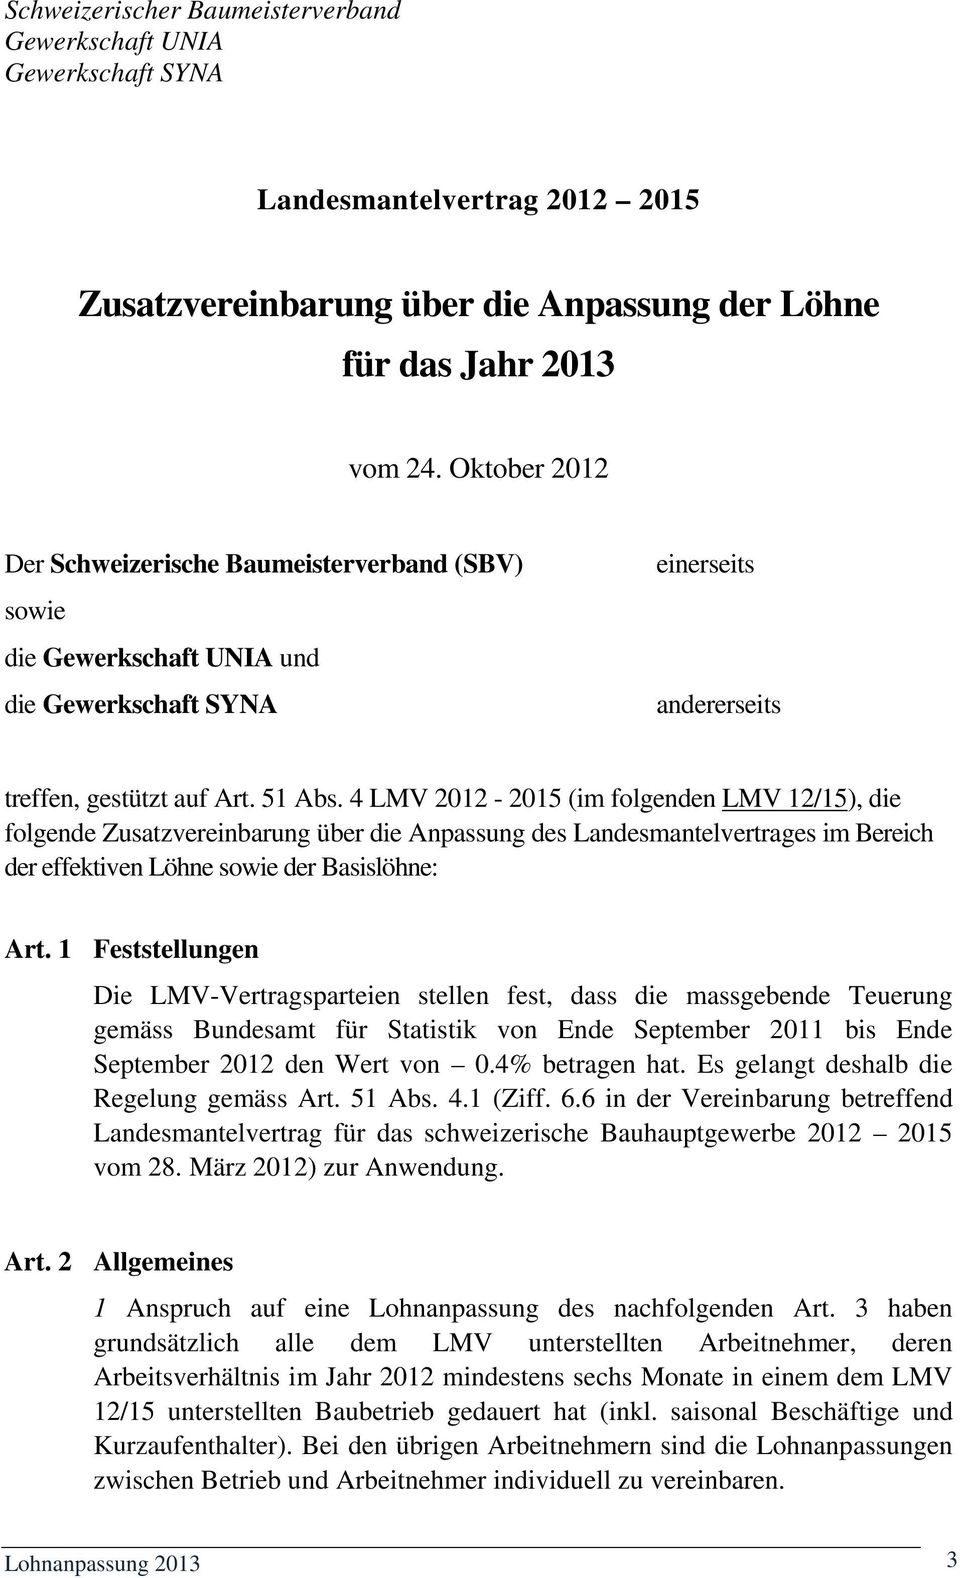 4 LMV 2012-2015 (im folgenden LMV 12/15), die folgende Zusatzvereinbarung über die Anpassung des Landesmantelvertrages im Bereich der effektiven Löhne sowie der Basislöhne: Art.